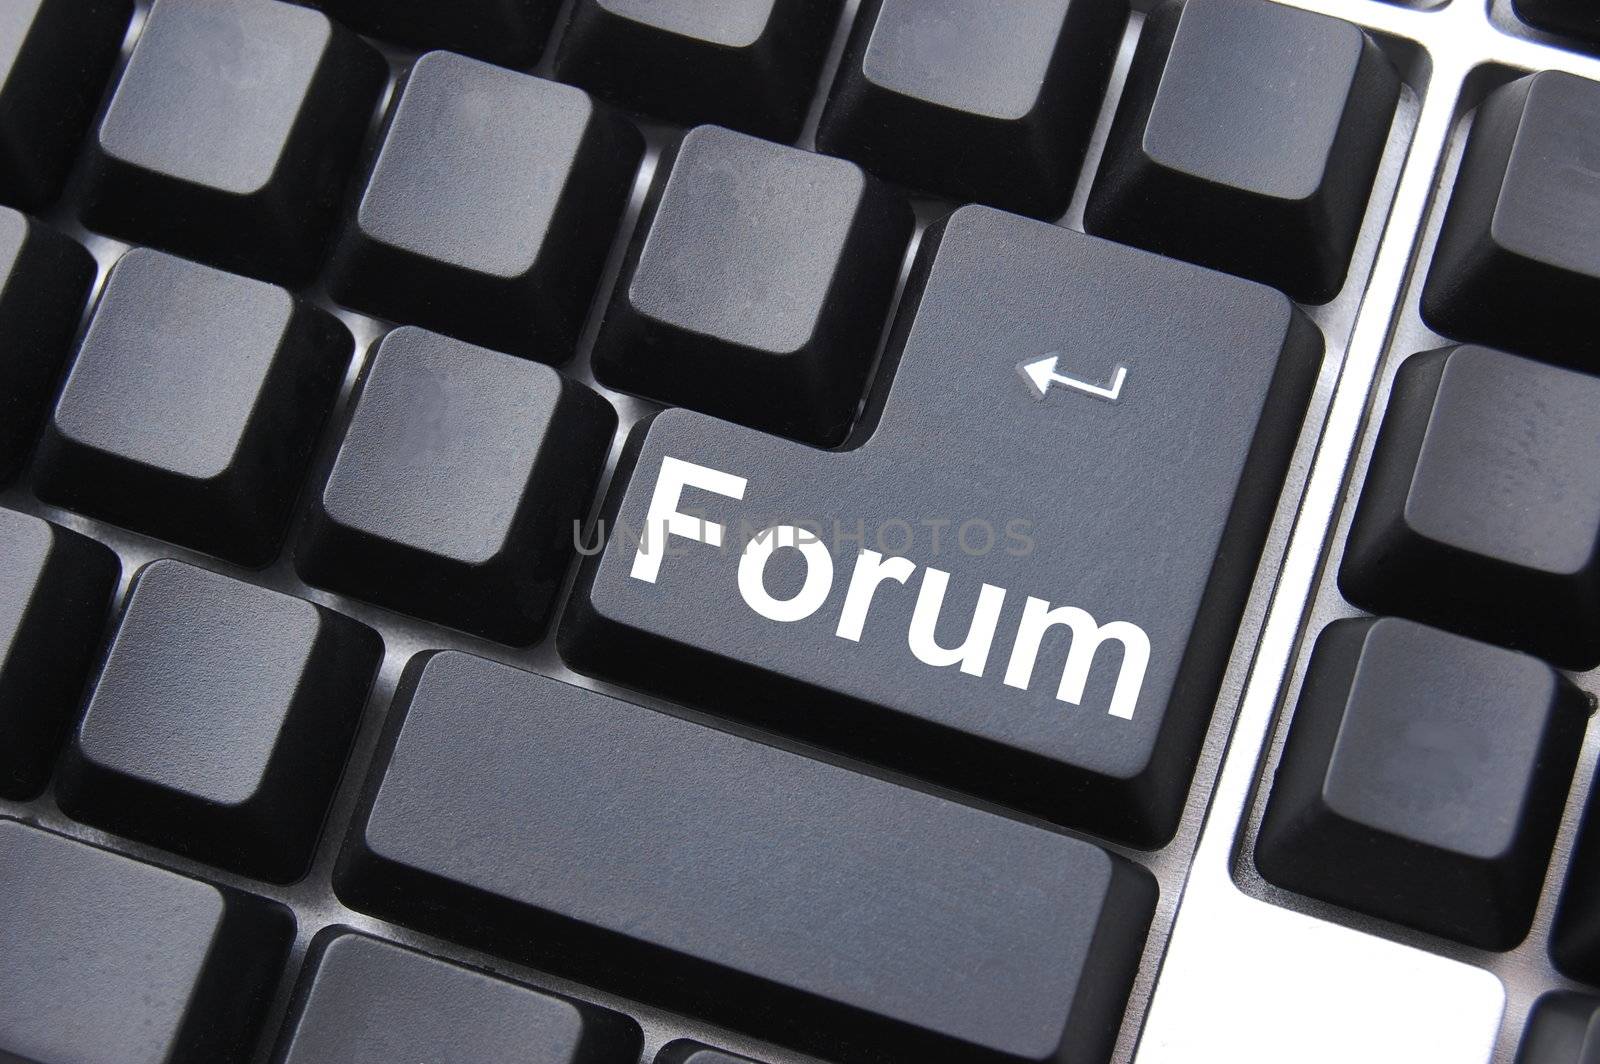 forum button shows concept for internet rss communication